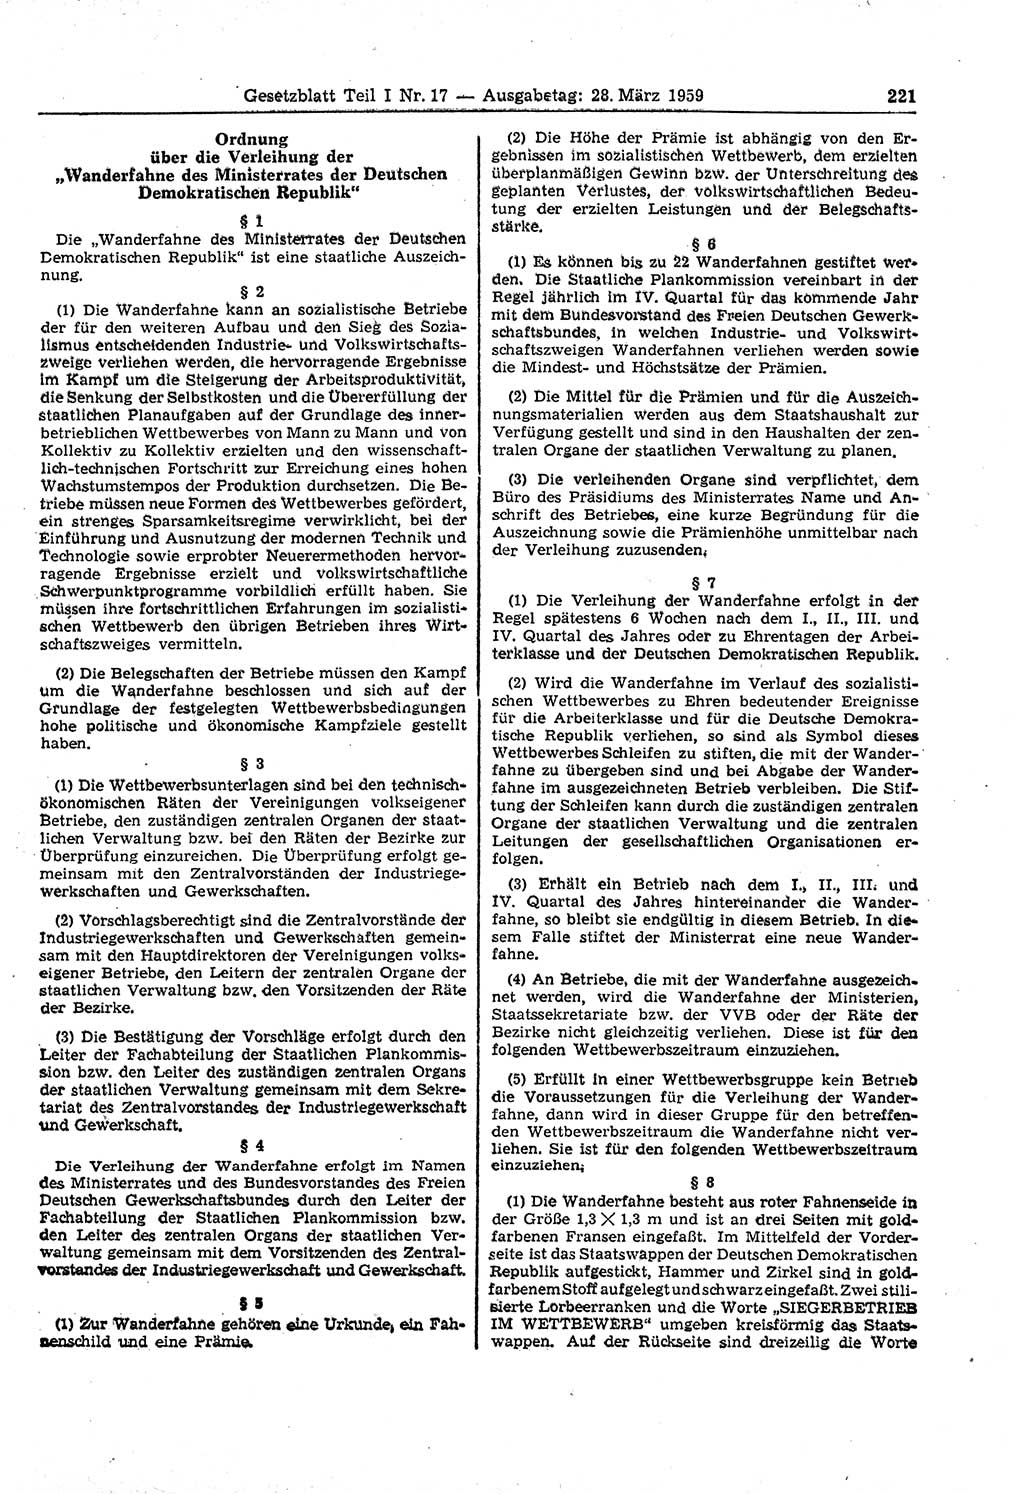 Gesetzblatt (GBl.) der Deutschen Demokratischen Republik (DDR) Teil Ⅰ 1959, Seite 221 (GBl. DDR Ⅰ 1959, S. 221)